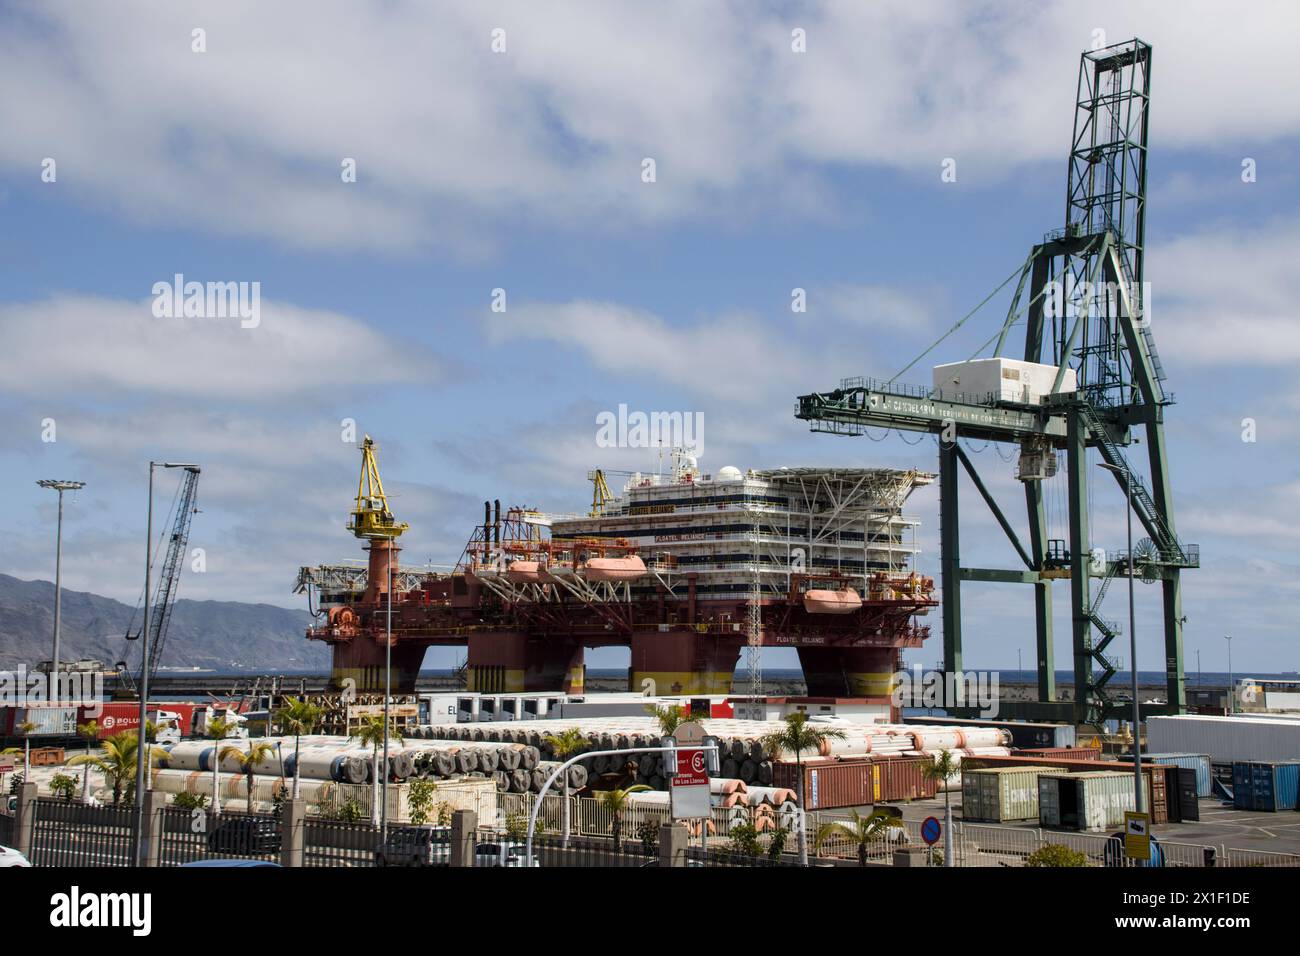 Bohrinsel zur Reparatur, Wartung oder Verschrottung im Hafen, Teneriffa, Kanarische Inseln, Spanien, Santa Cruz Foto Stock